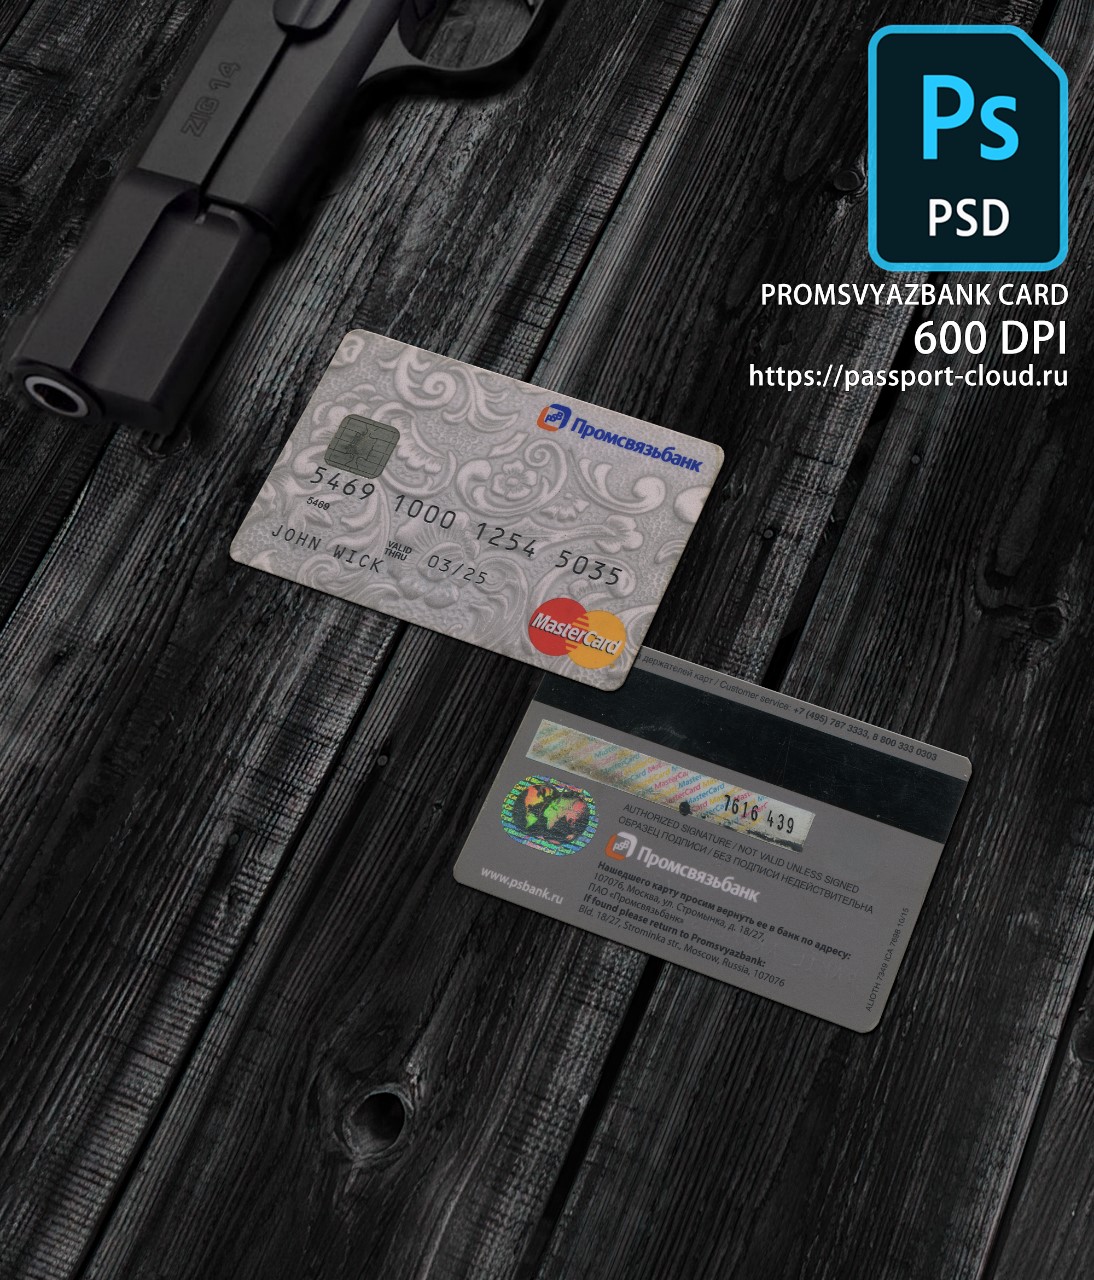 Promsvyaz Bank Card PSD1